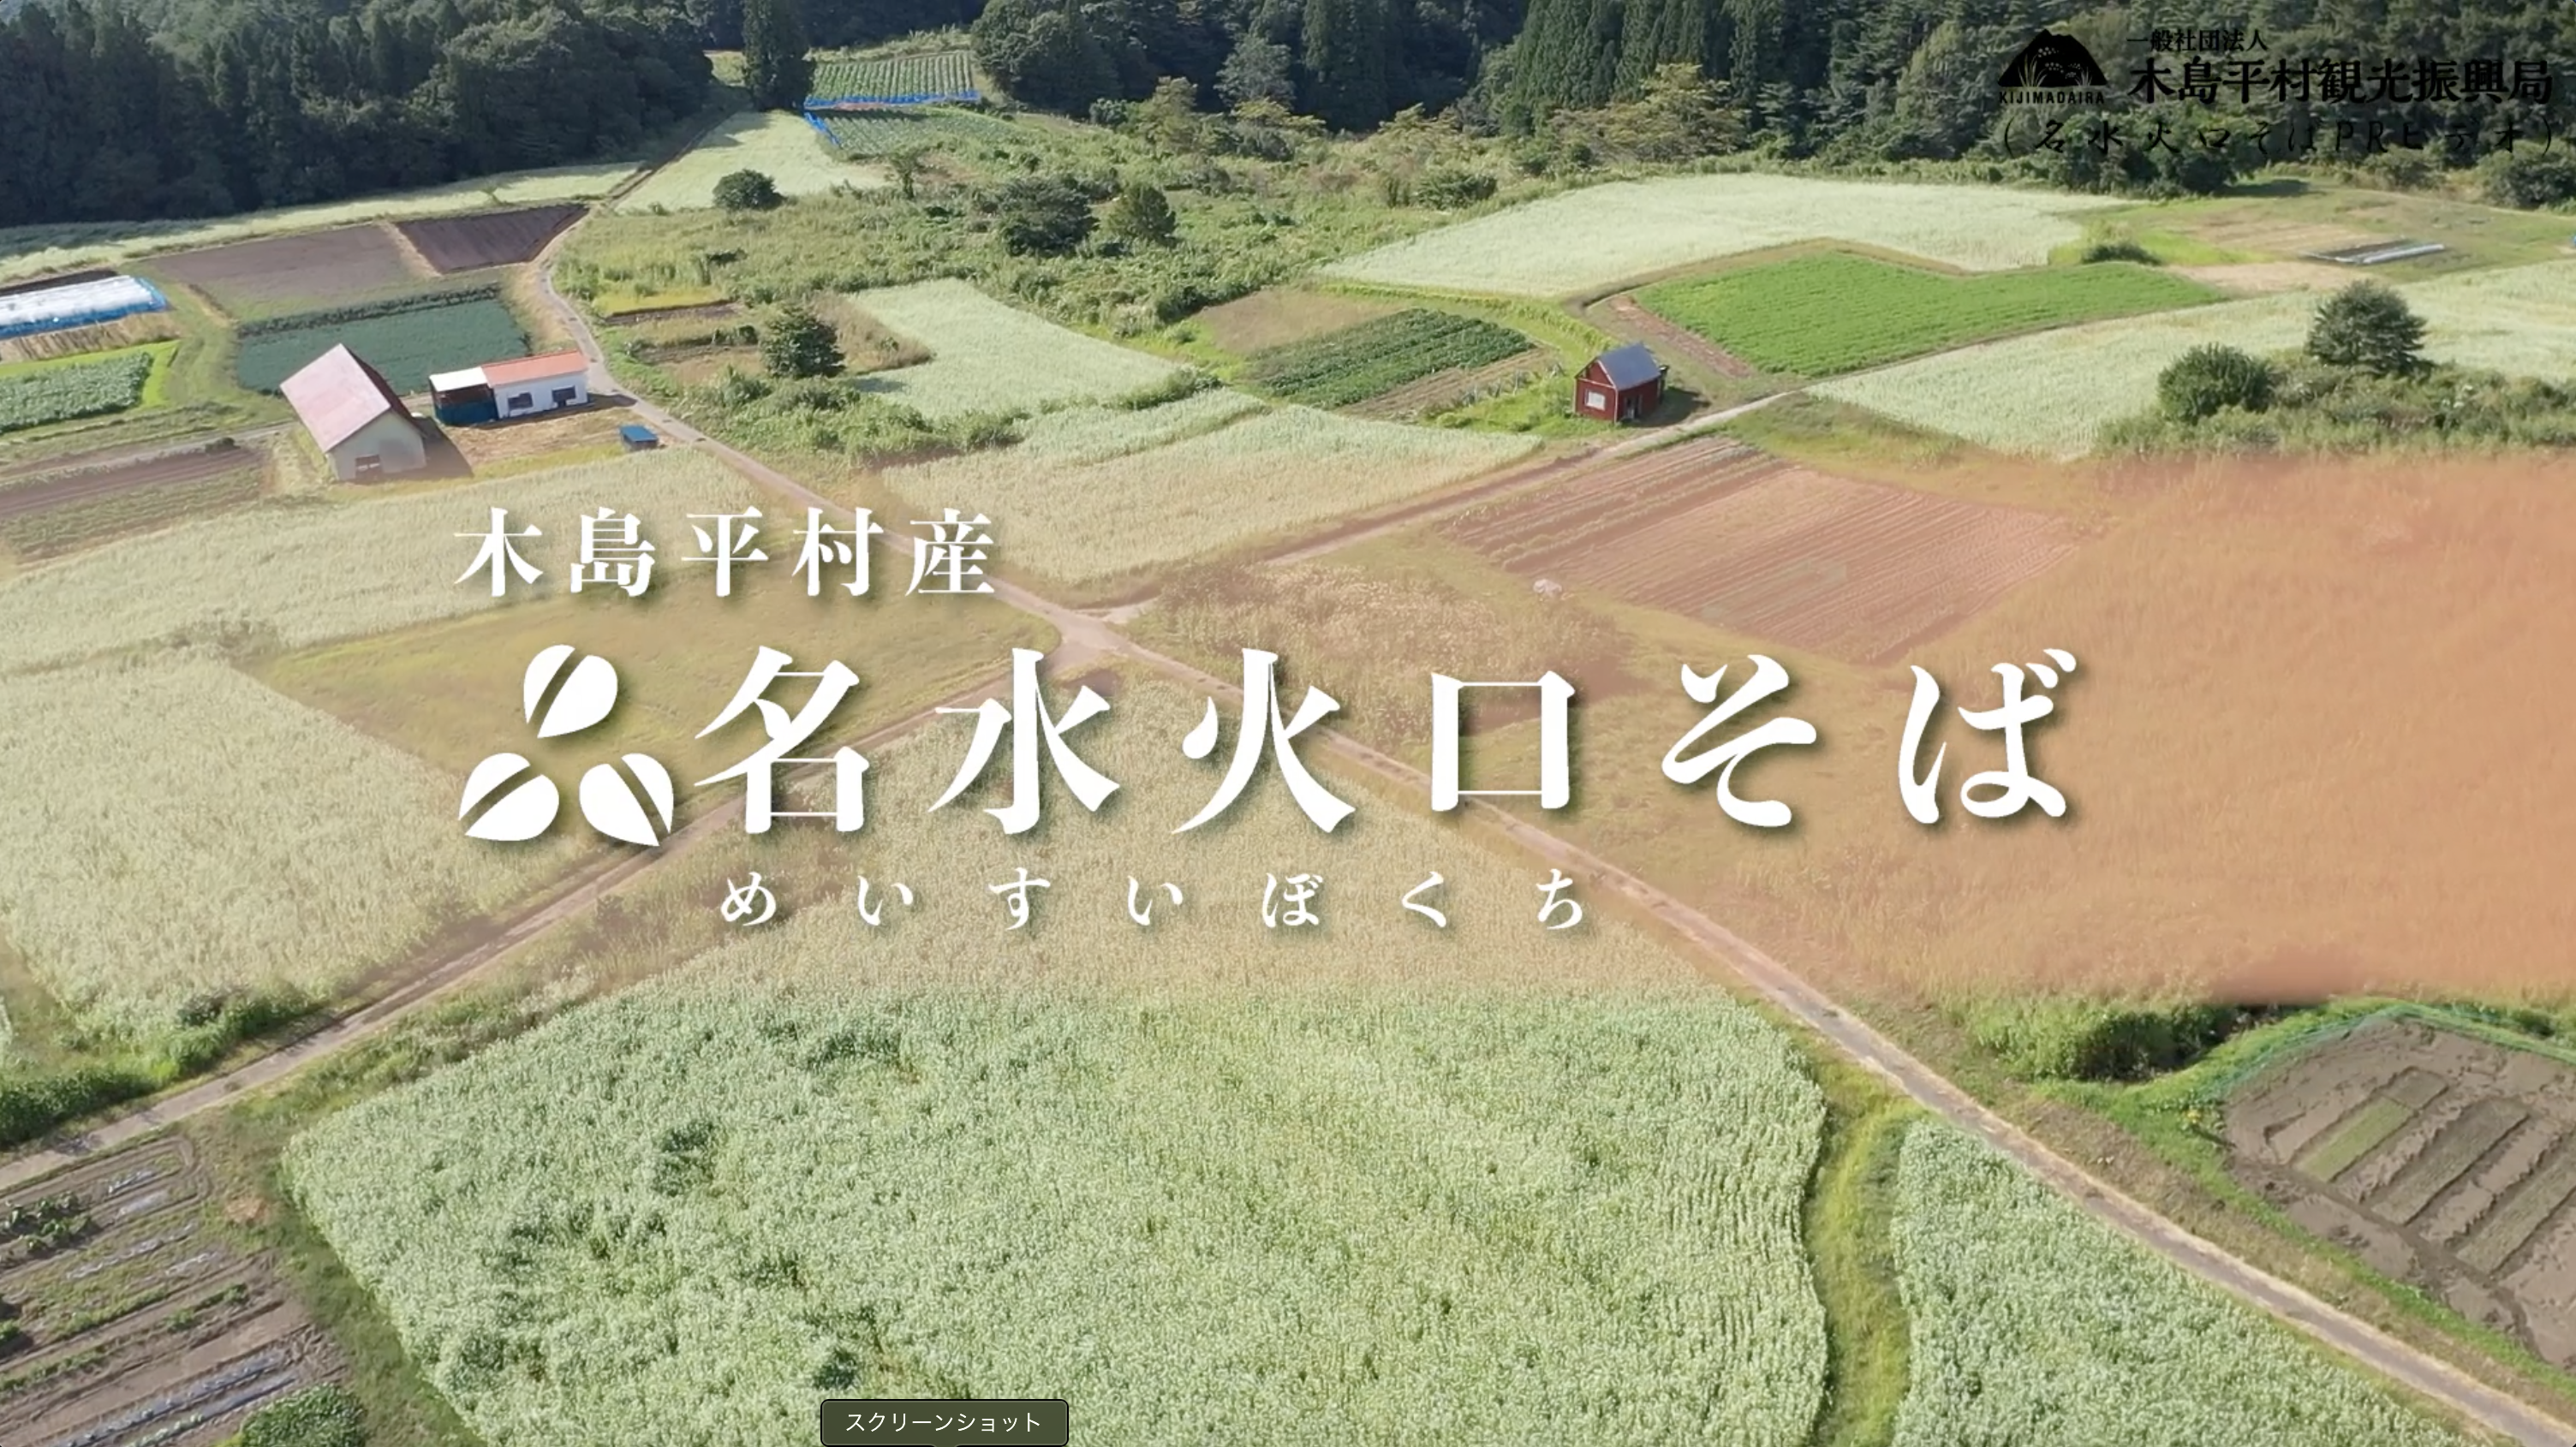 木島平村の名水火口そばを紹介する動画